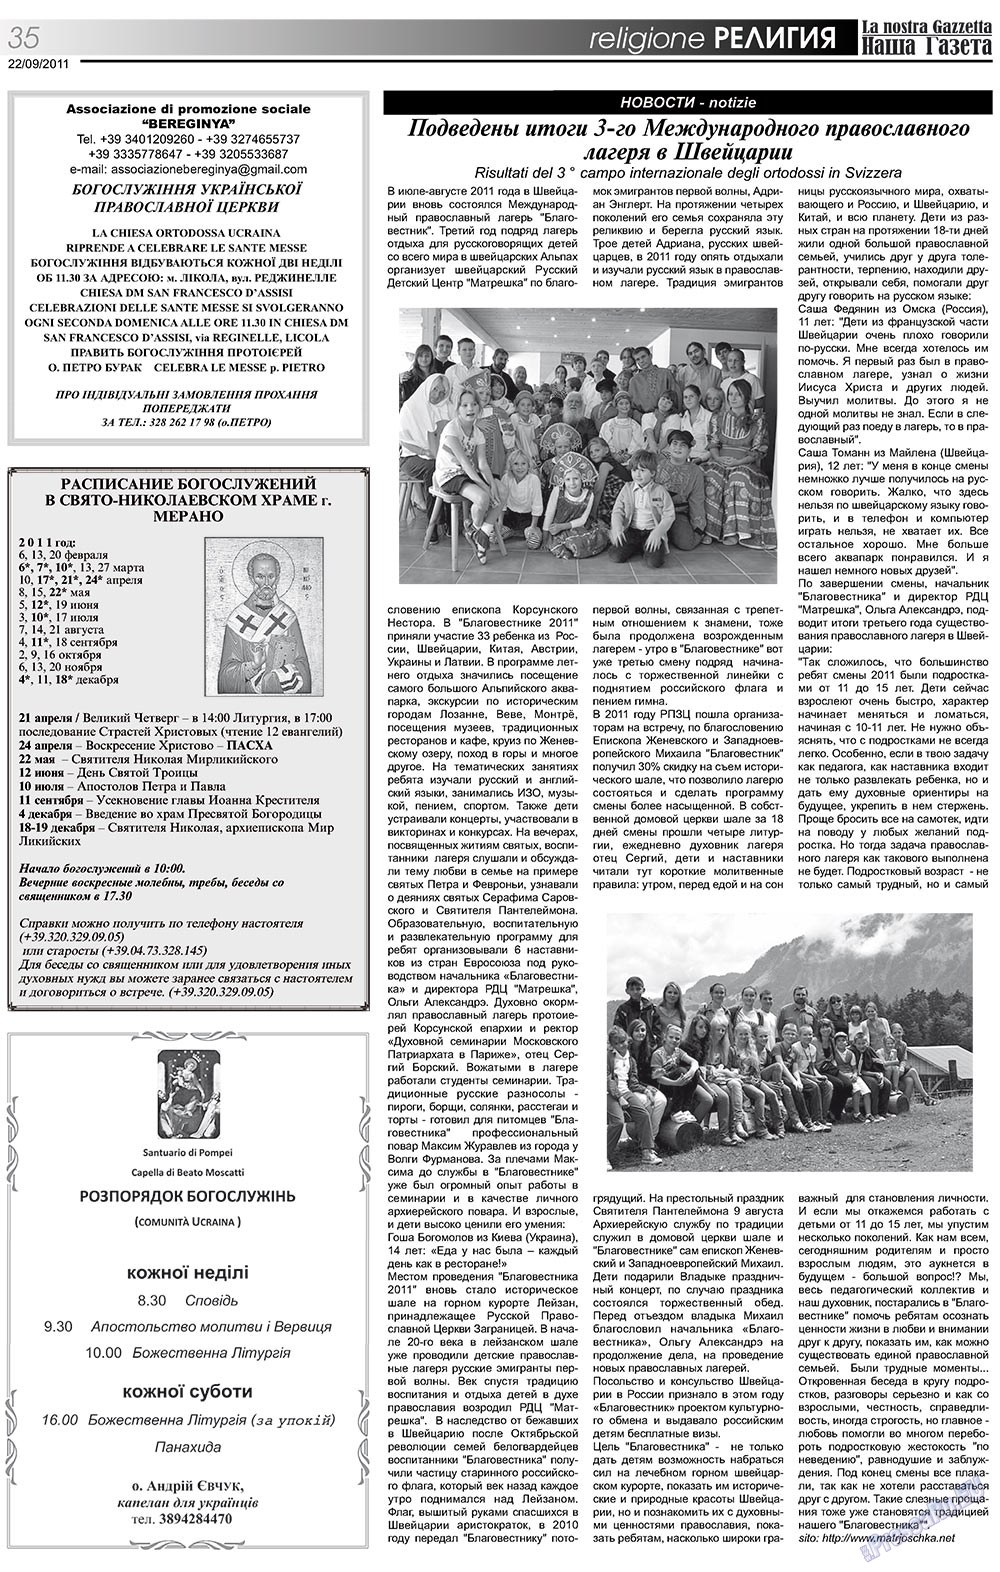 Nascha Gazeta (Zeitung). 2011 Jahr, Ausgabe 141, Seite 35